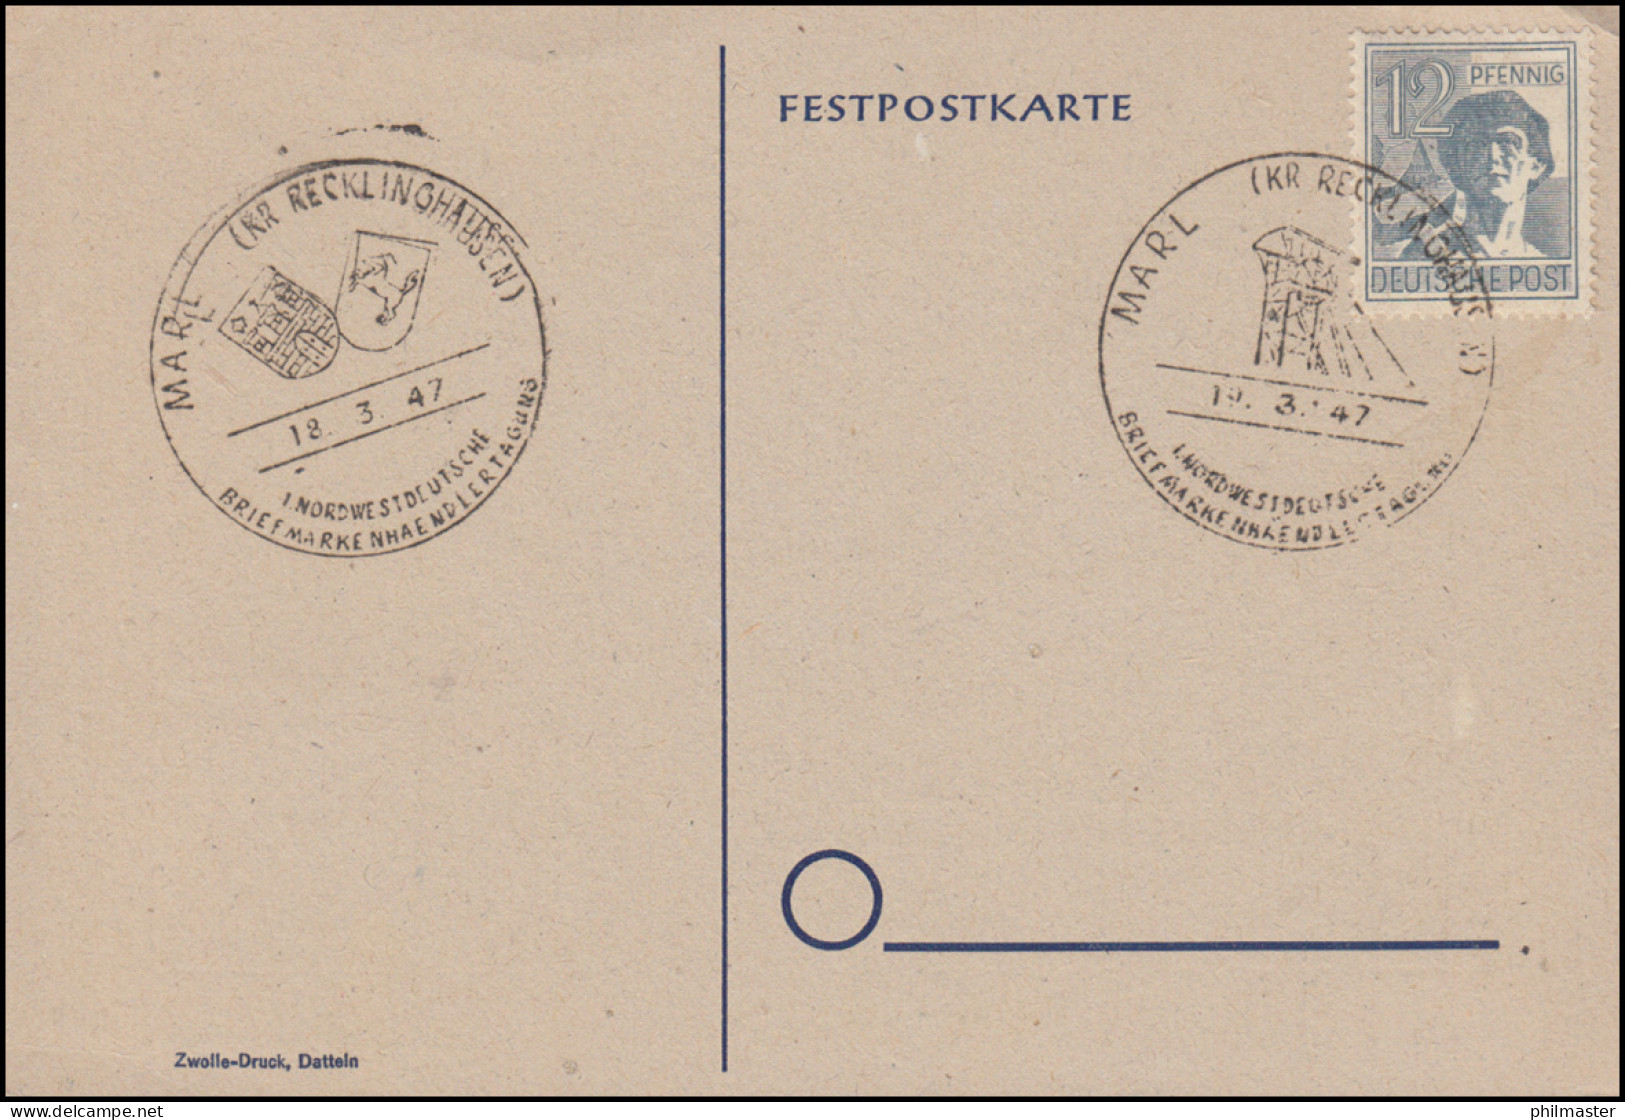 Sonder-Postkarte MARL 1. Nordwestdeutsche Briefmarkenhändlertagung 18.-19.3.1947 - Exposiciones Filatélicas